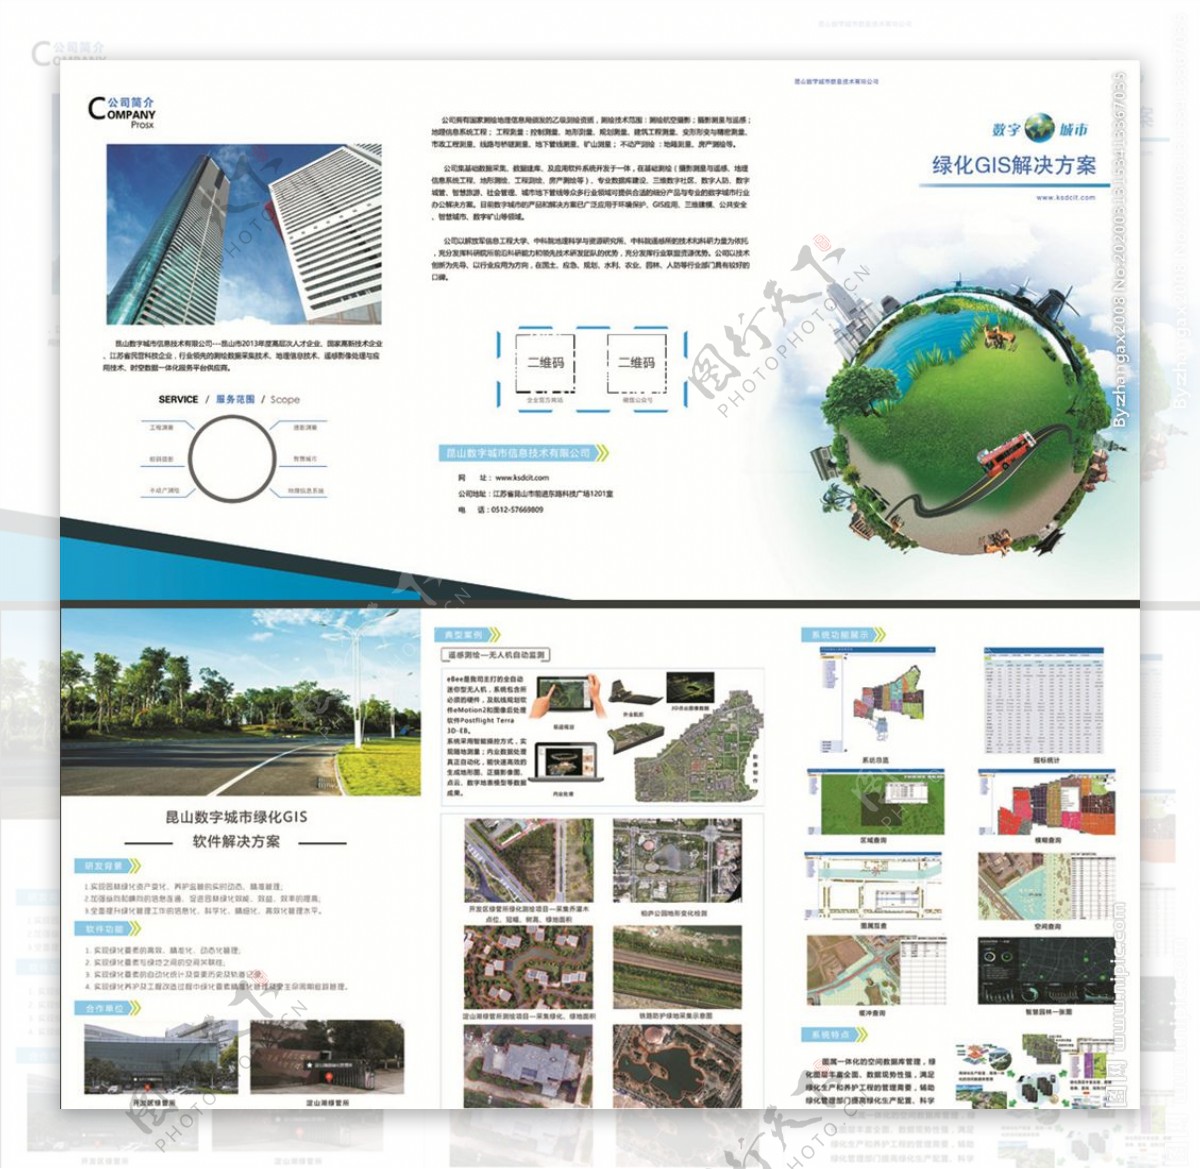 绿化gis三折页地理信息系统